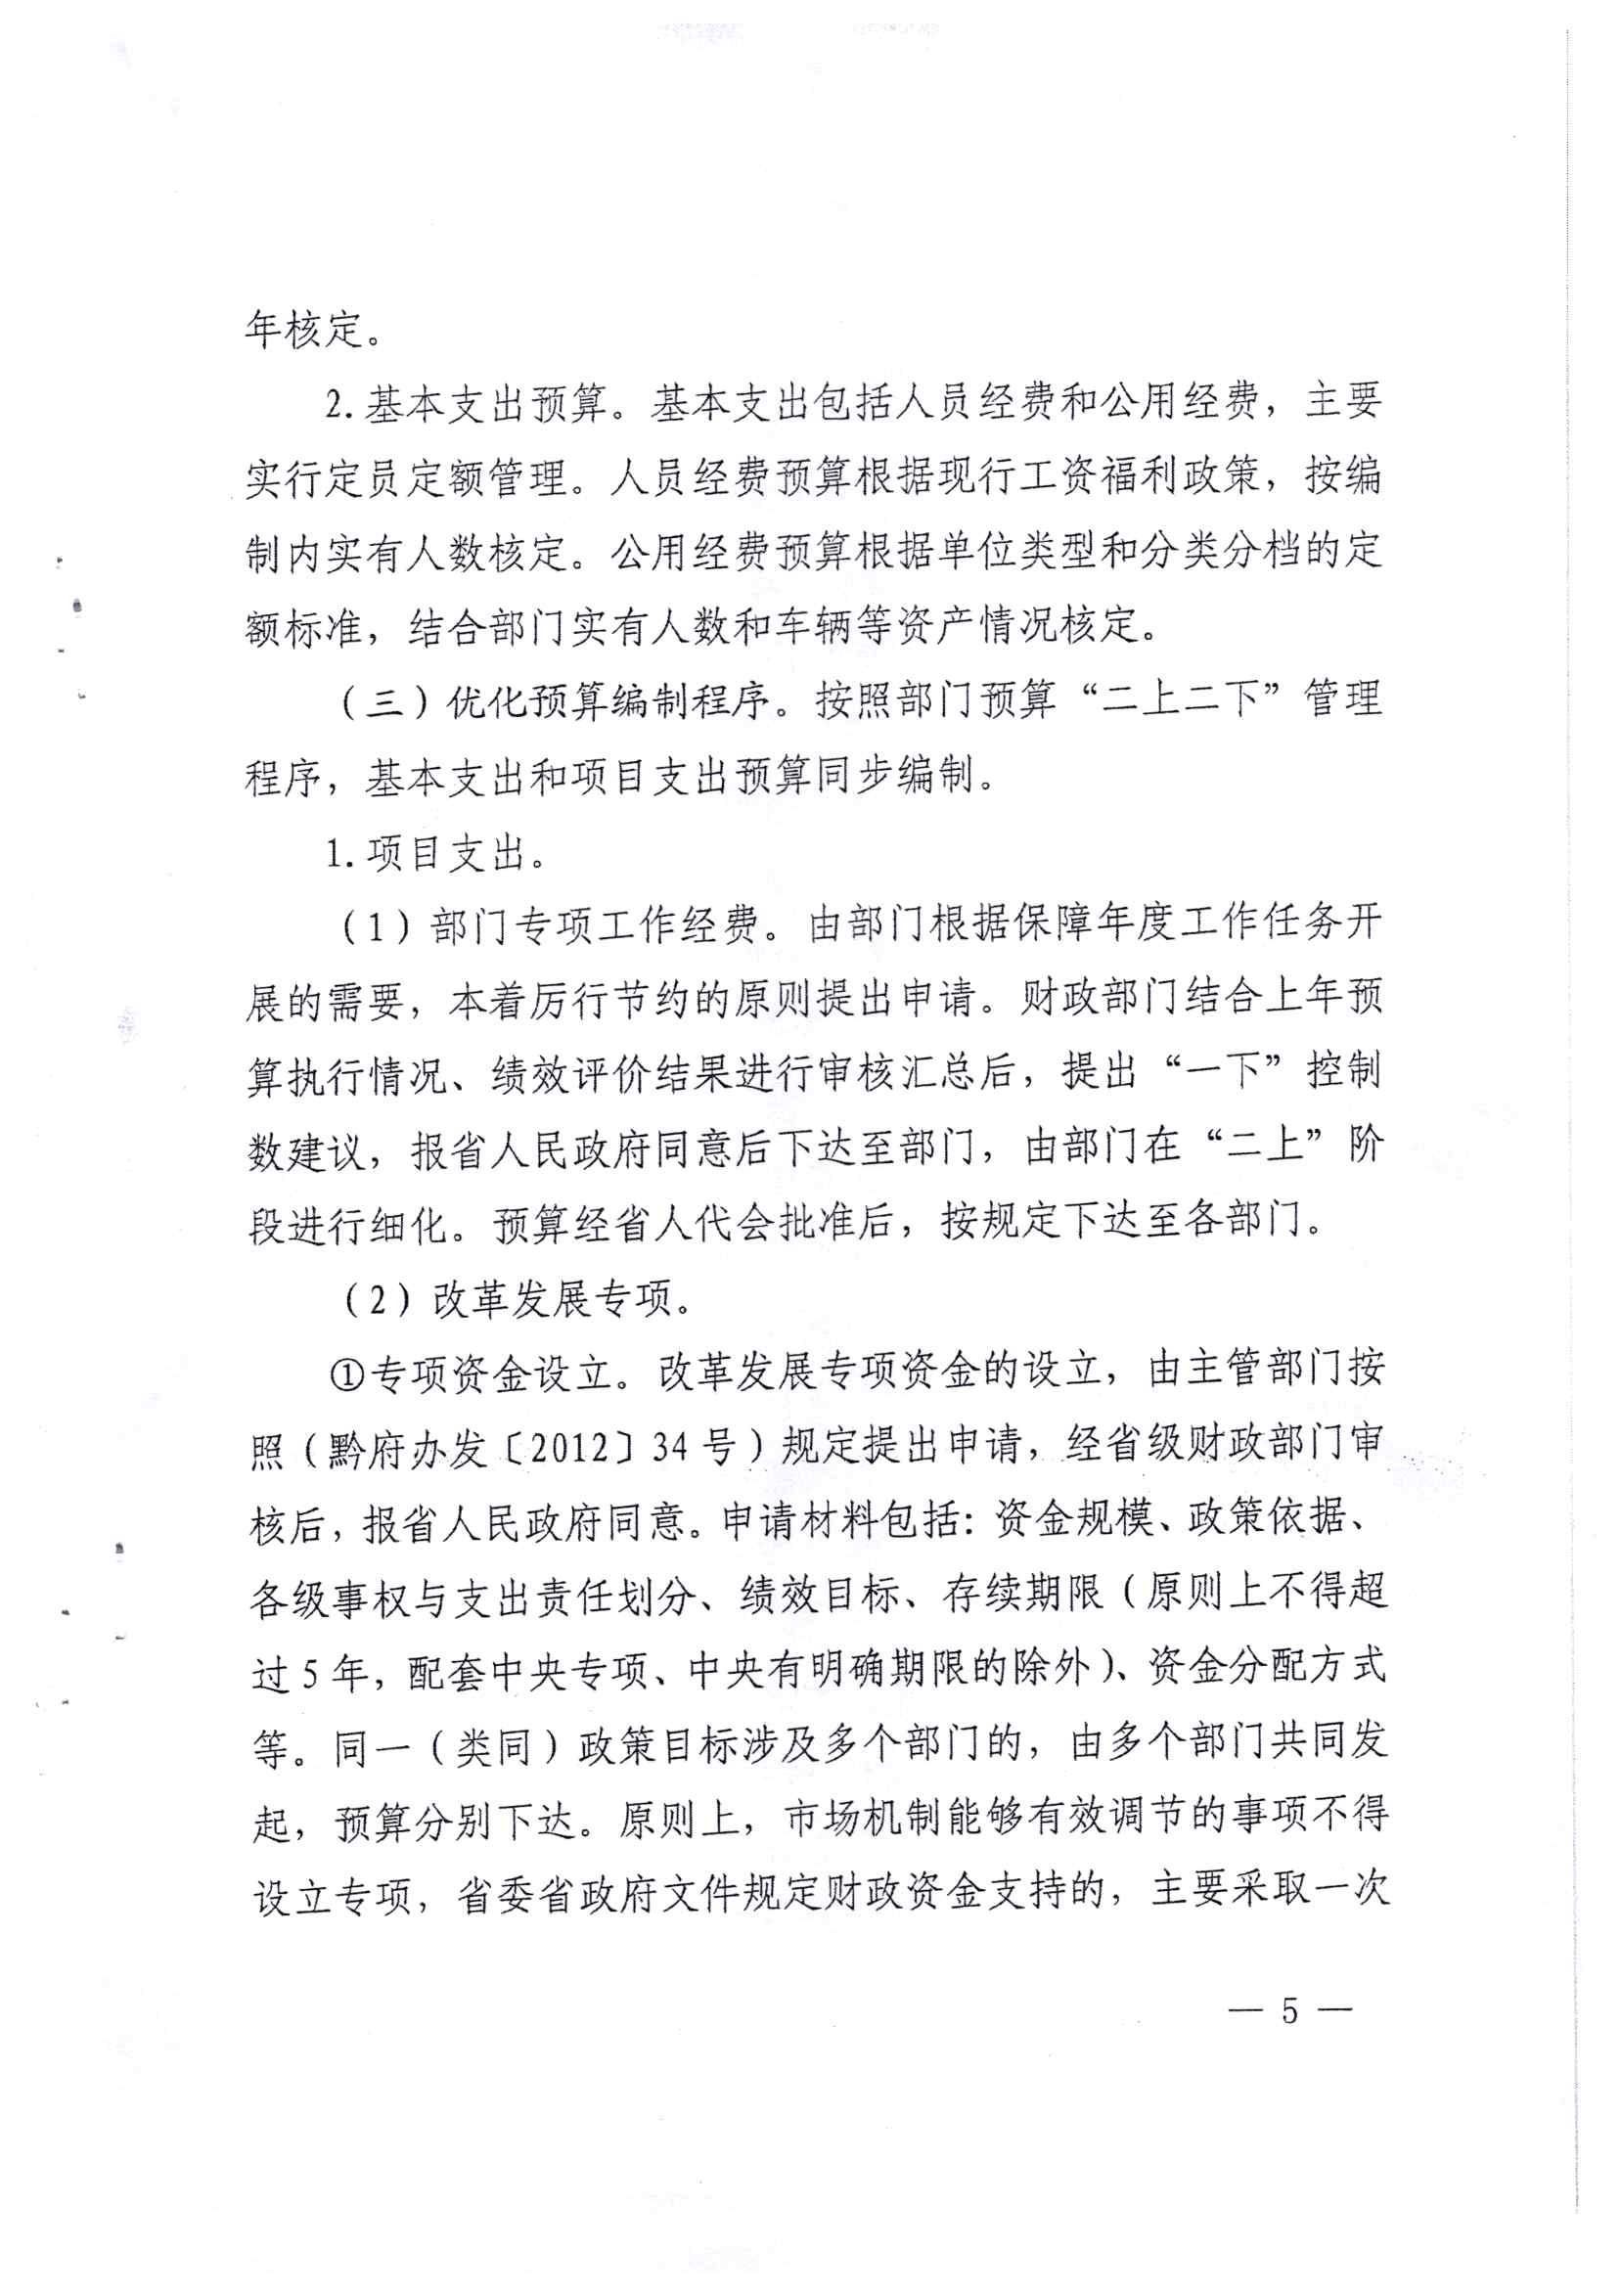 贵州省财政厅关于印发推进省级部门支出预算管理改革方案的通知_页面_5.jpg